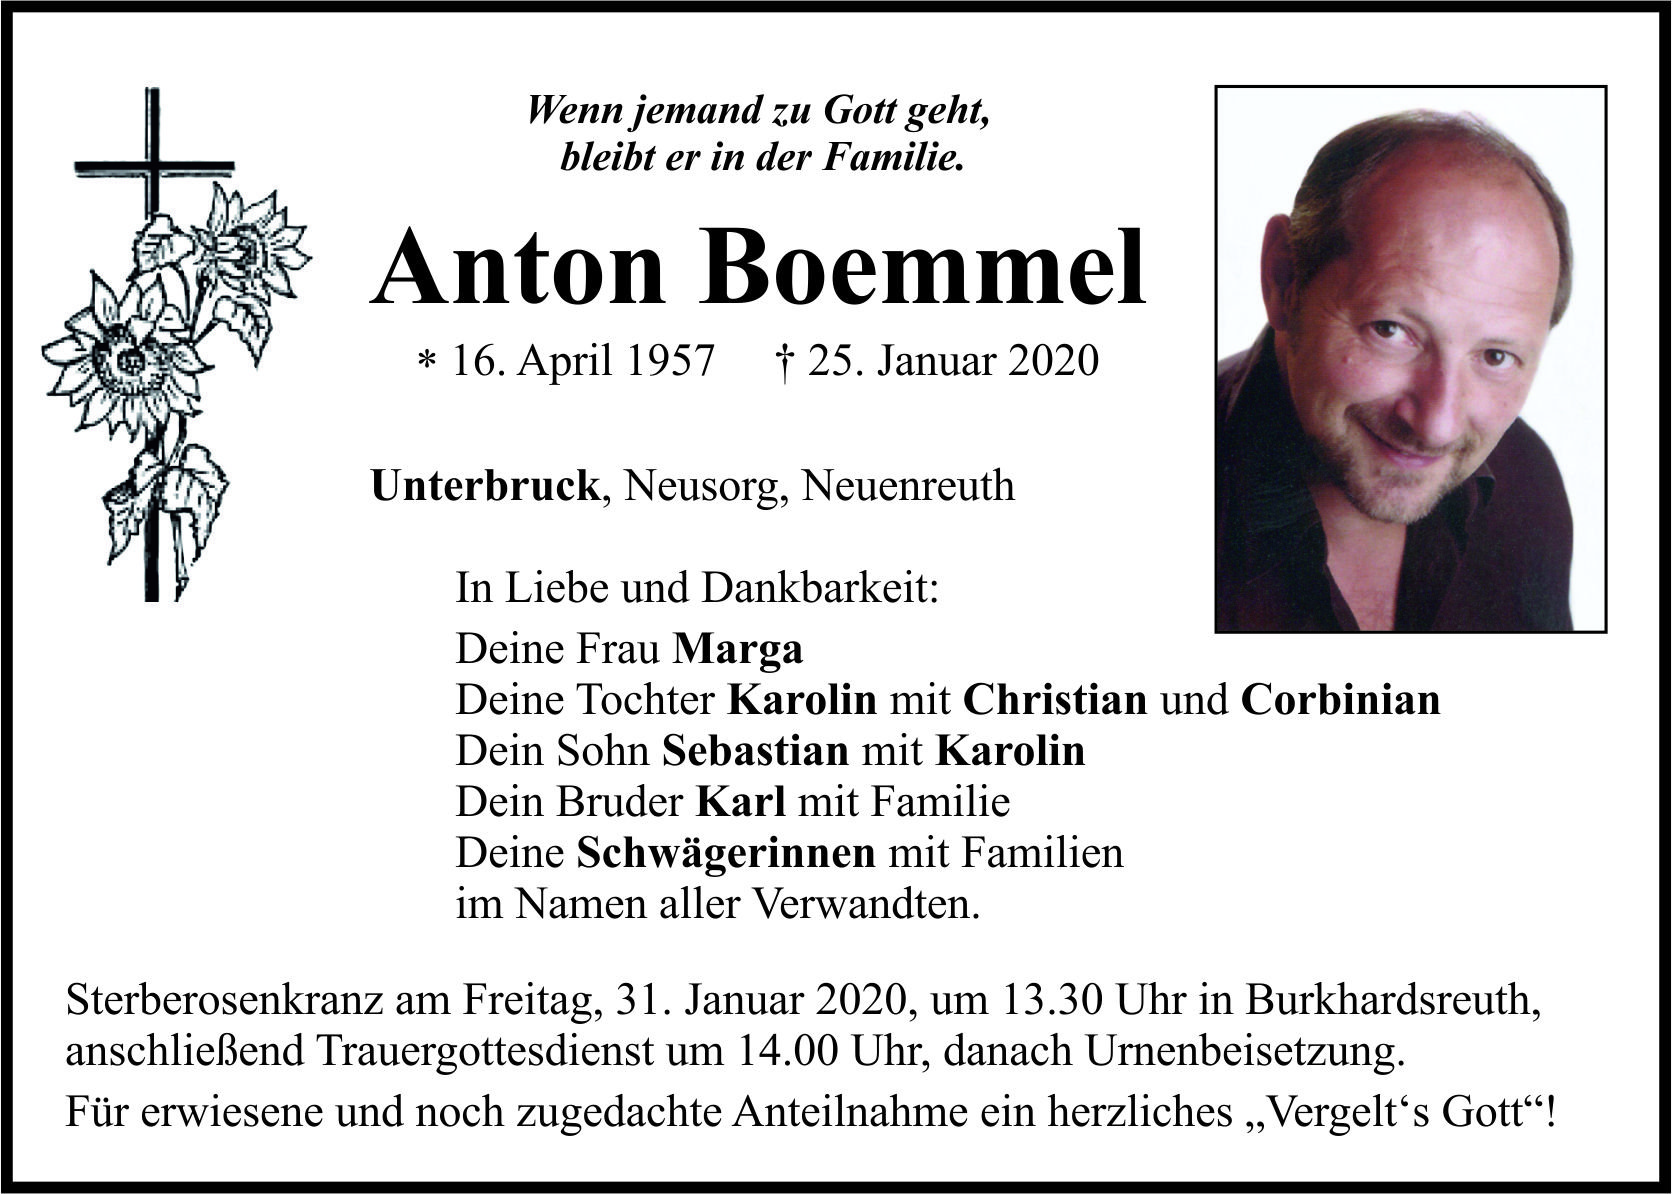 Traueranzeige Anton Boemmel, Unterbruck